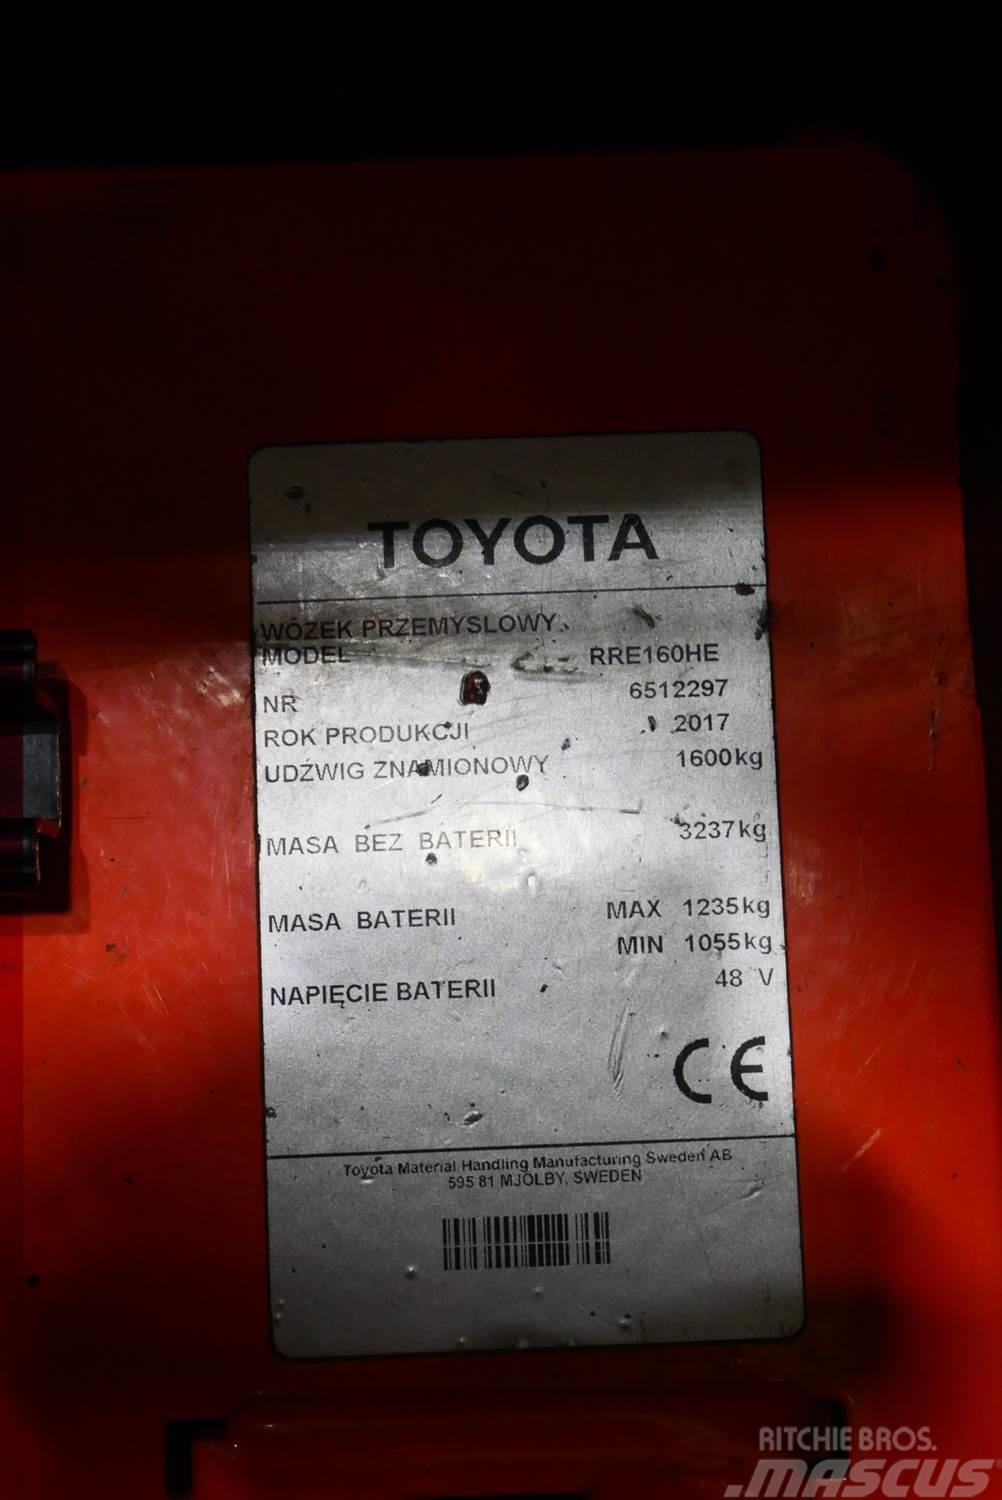 Toyota RRE160HE Skyvemasttruck